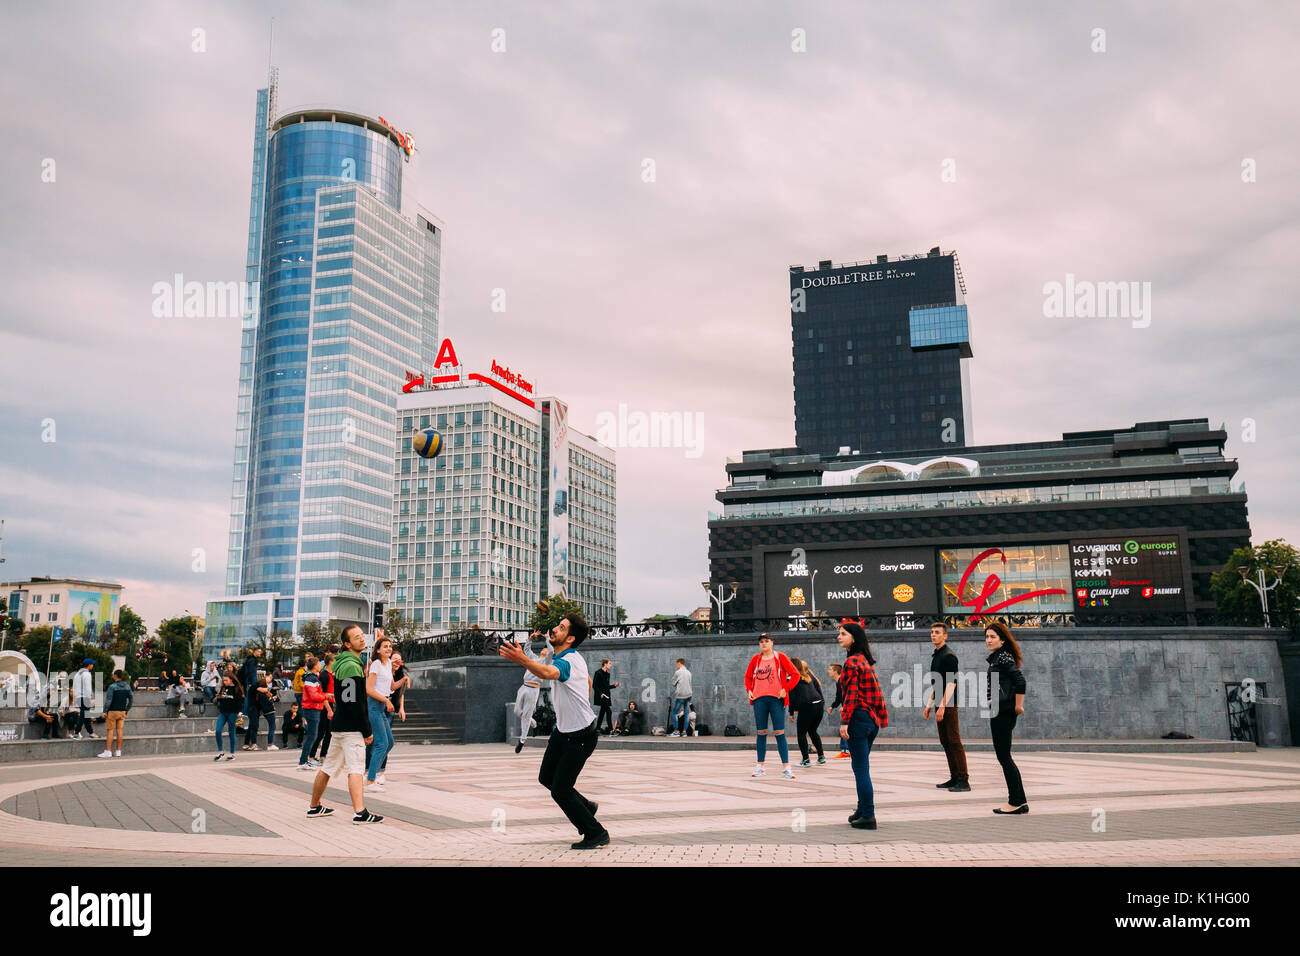 Minsk, Belarus - 28 juin 2017 : les jeunes à jouer au ballon sur fond de centre d'affaires Royal Plaza, Hôtel Doubletree By Hilton et le centre commercial Banque D'Images